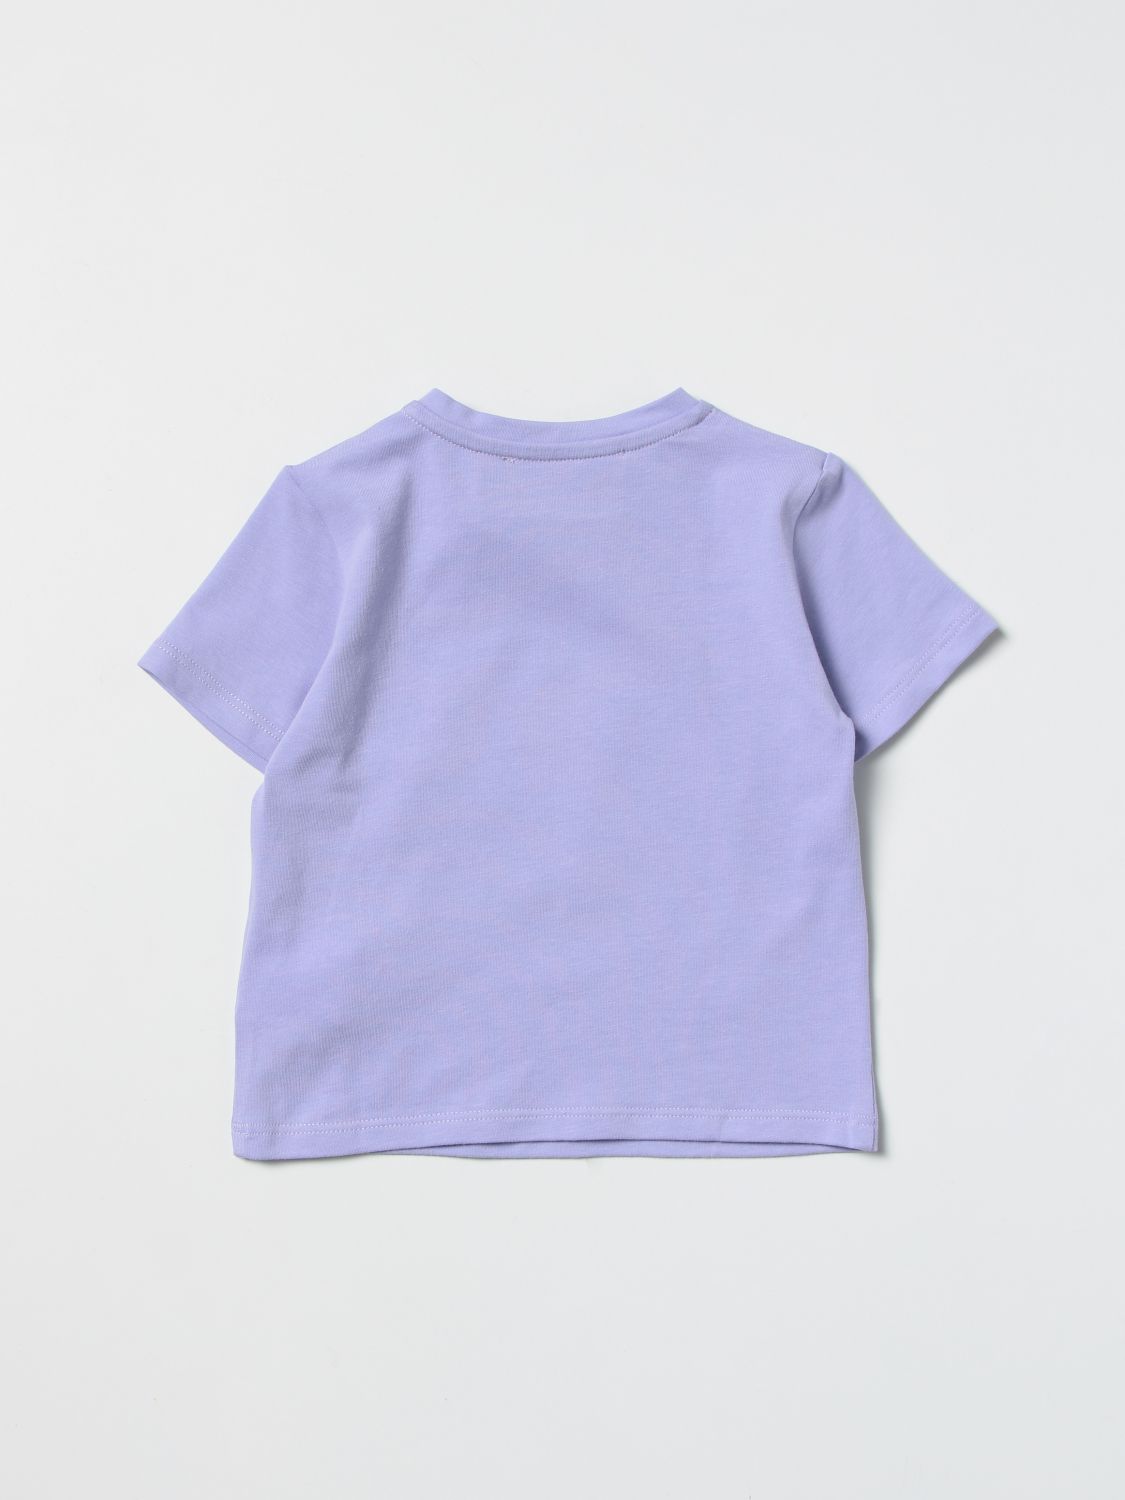 Camiseta Young Versace: Camiseta Young Versace para bebé lila 2